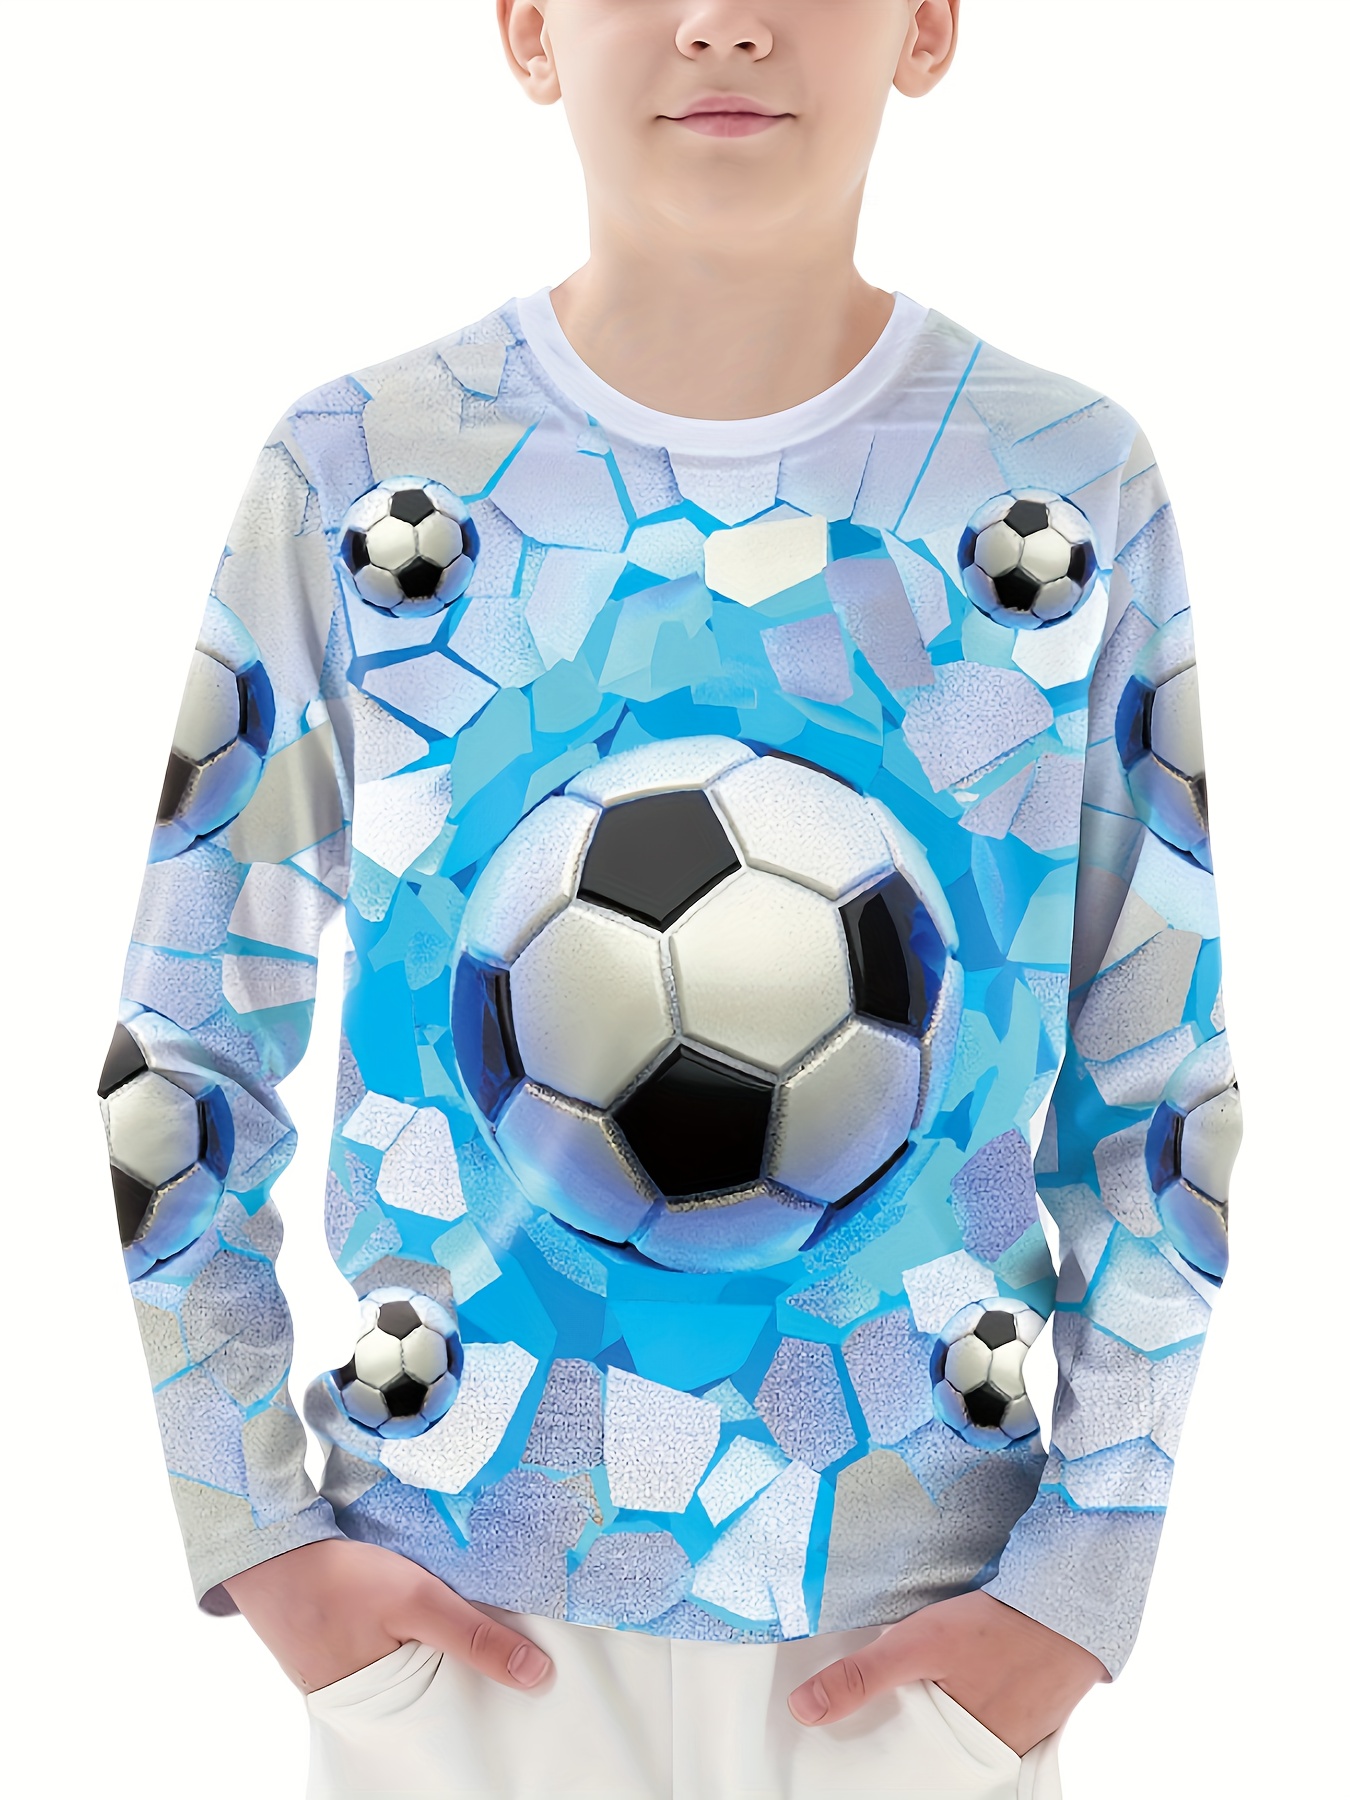 Camiseta de Futbol PRO Niño azul/blanco